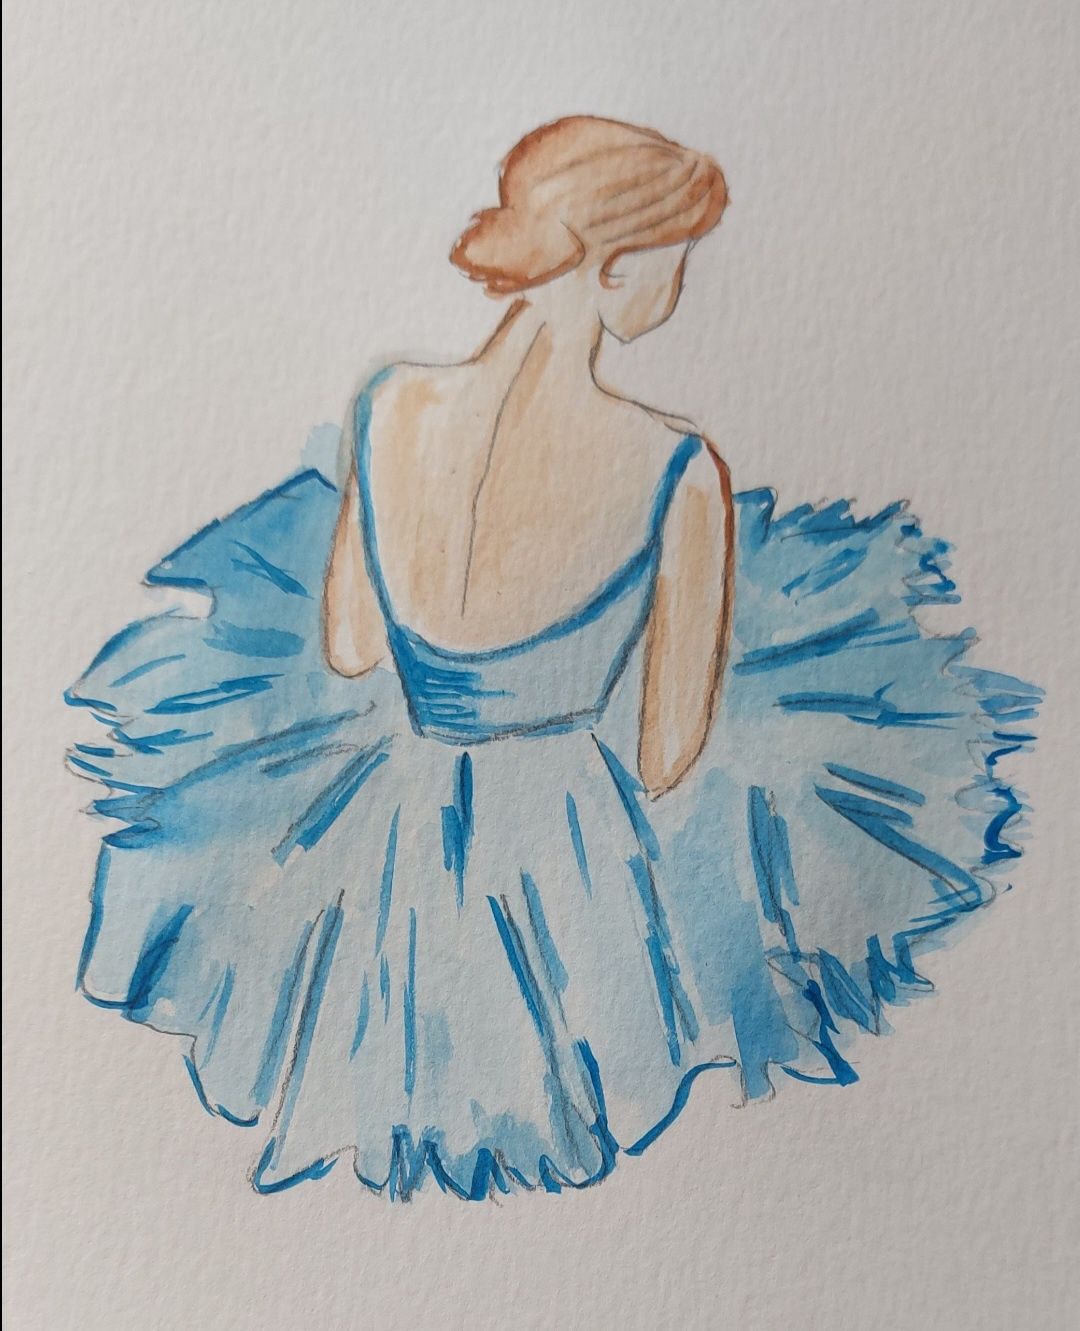 Błękitna baletnica akwarela a4 piękna